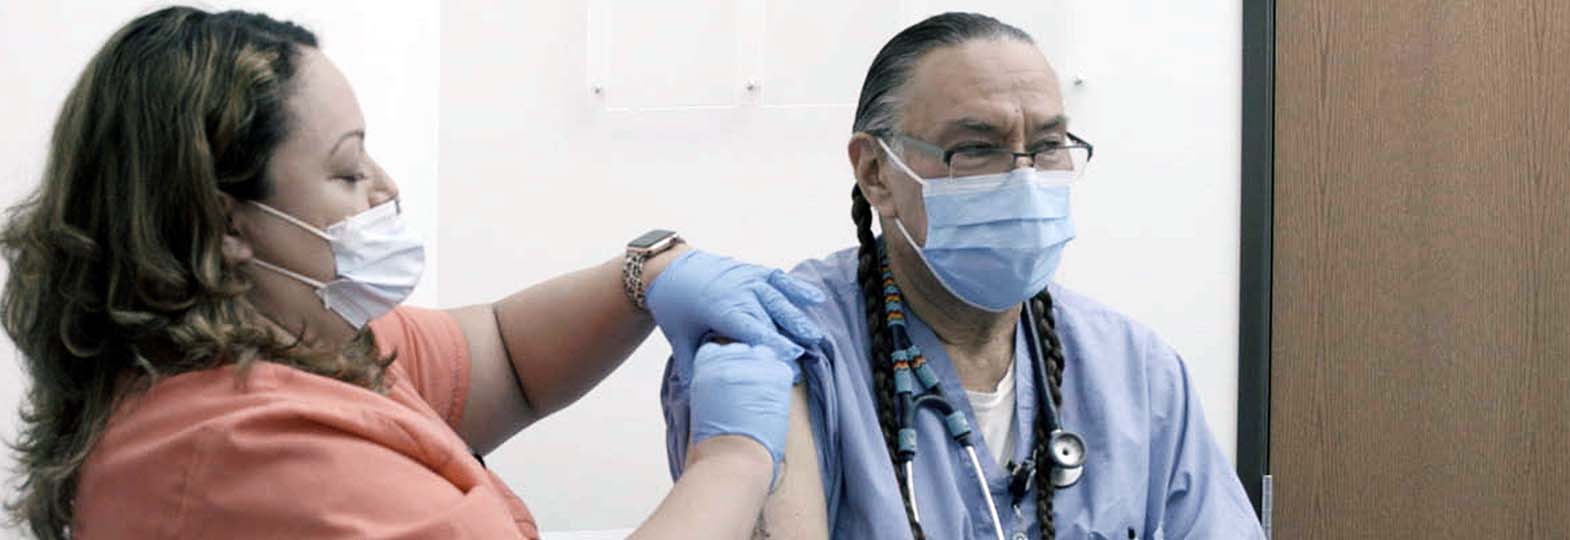 native american man getting a flu shot